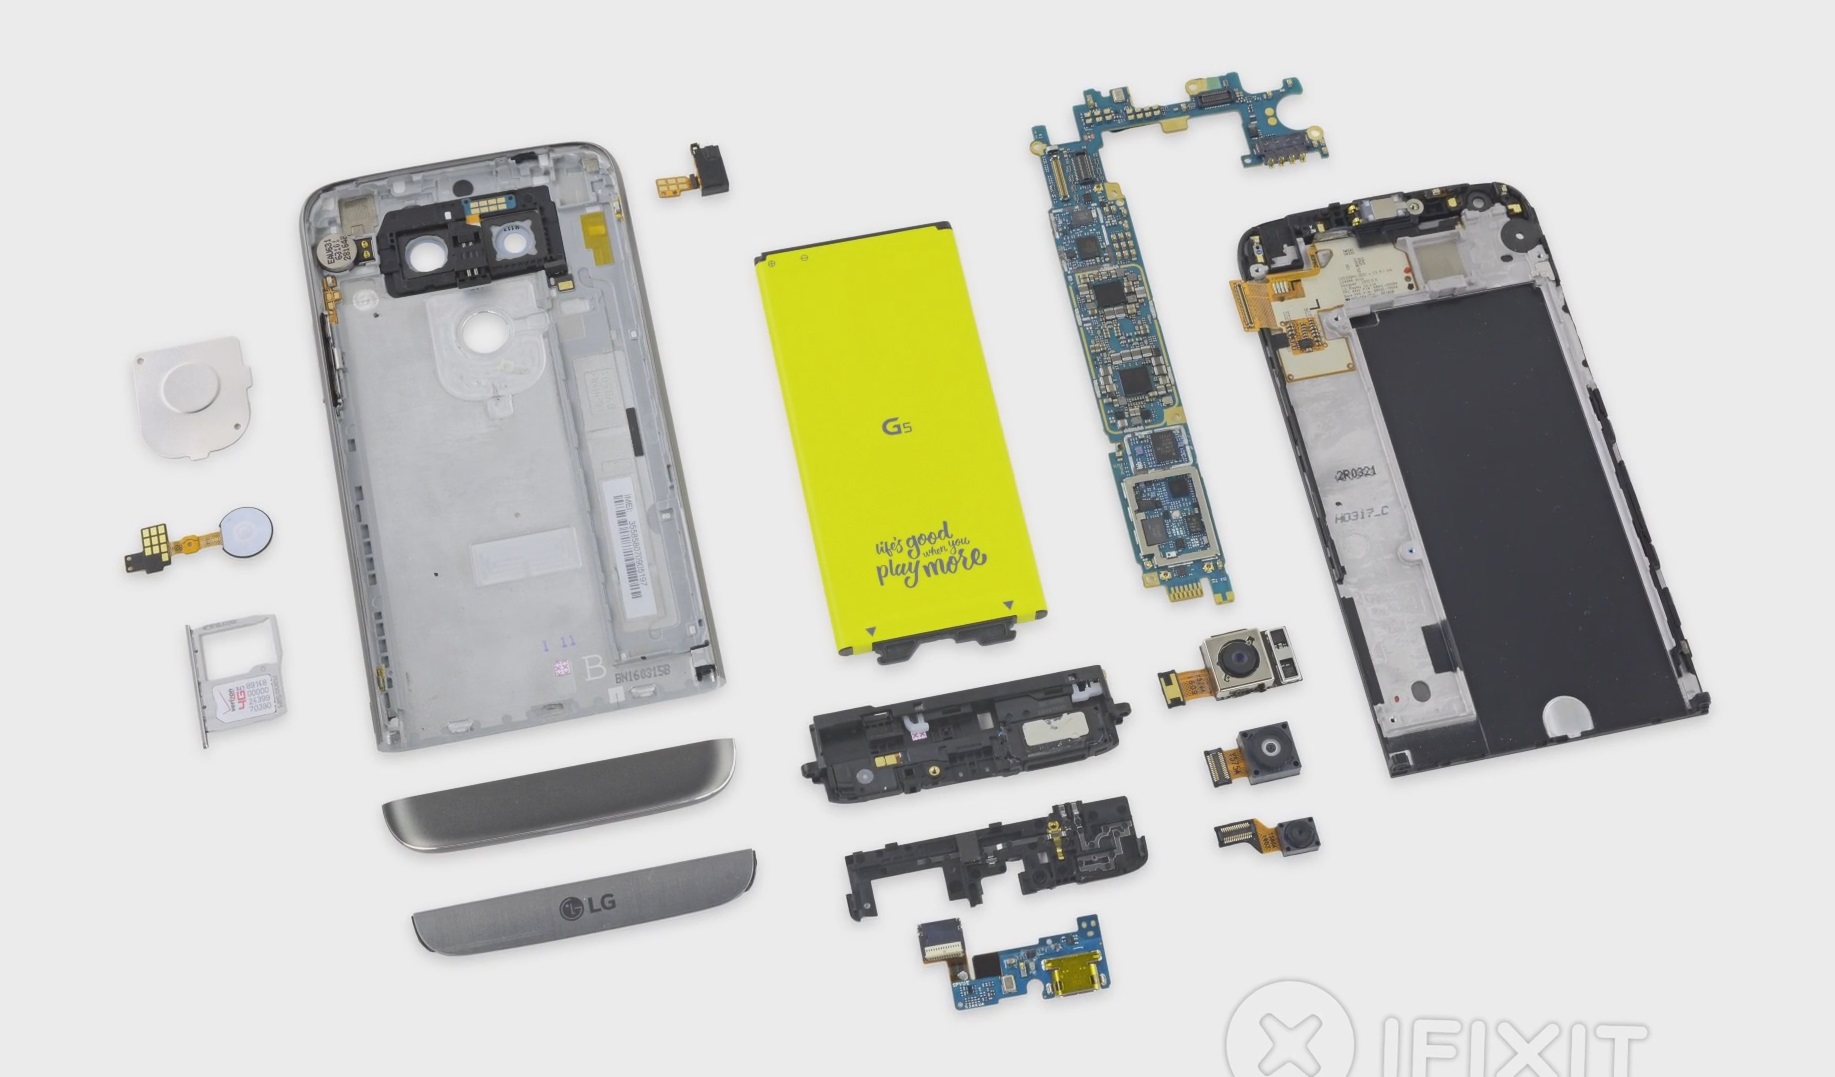 ชมคลิปแกะเครื่อง LG G5 ที่ถูกยกย่องโดย iFixit ว่าแกะง่าย คว้าคะแนนซ่อมง่าย 8/10 !!